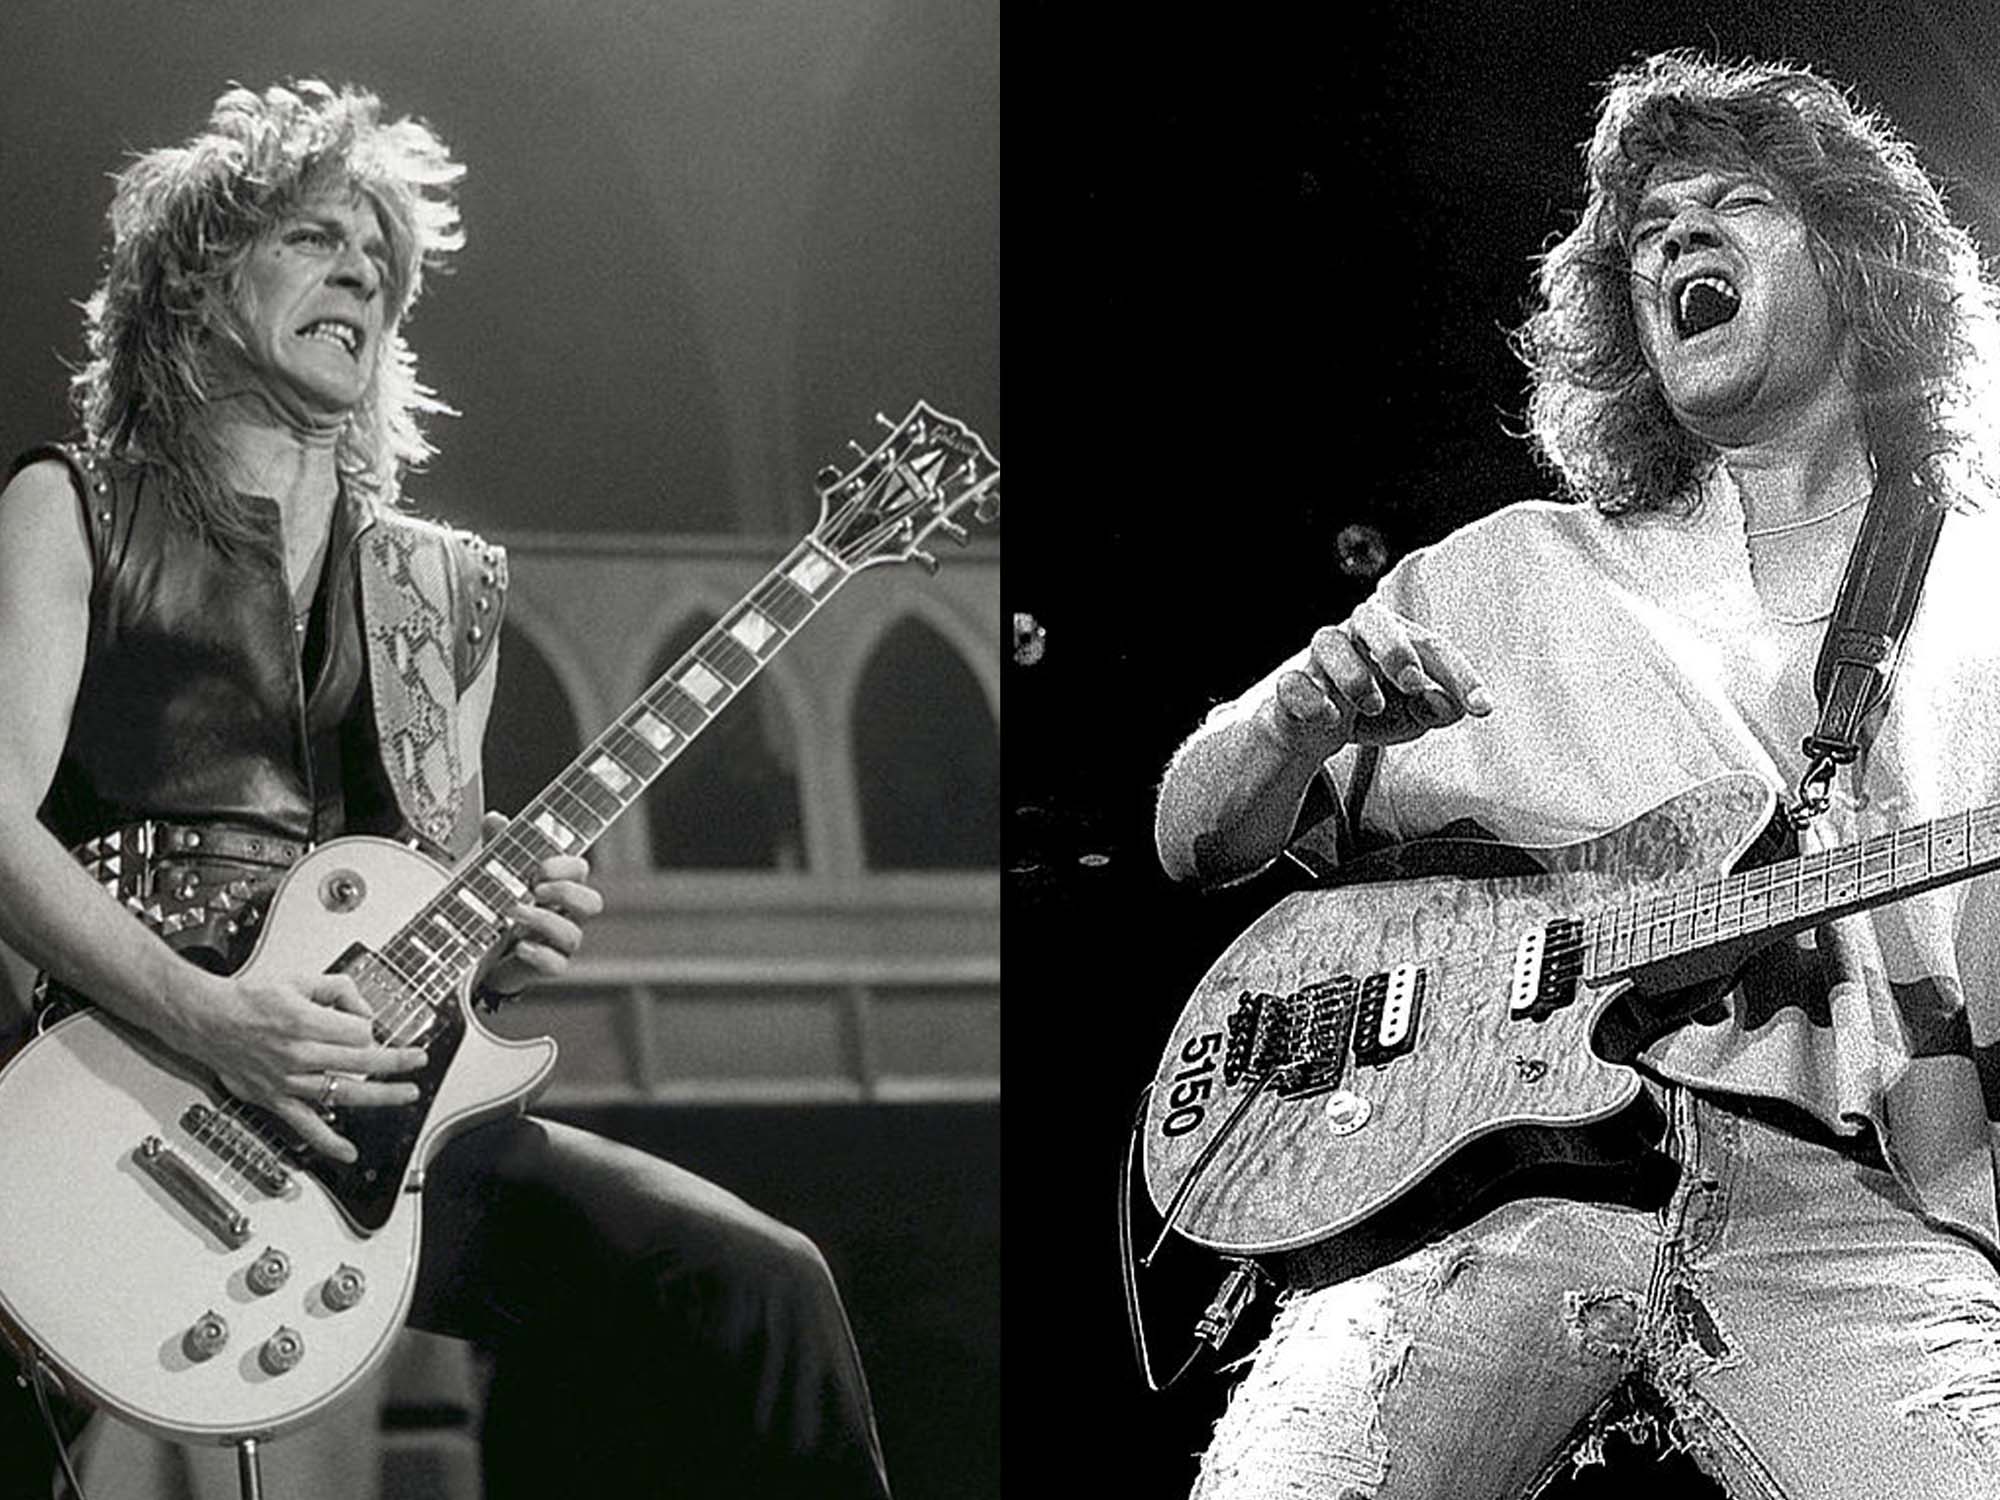 Randy Rhoads 1982 and Eddie Van Halen 1993